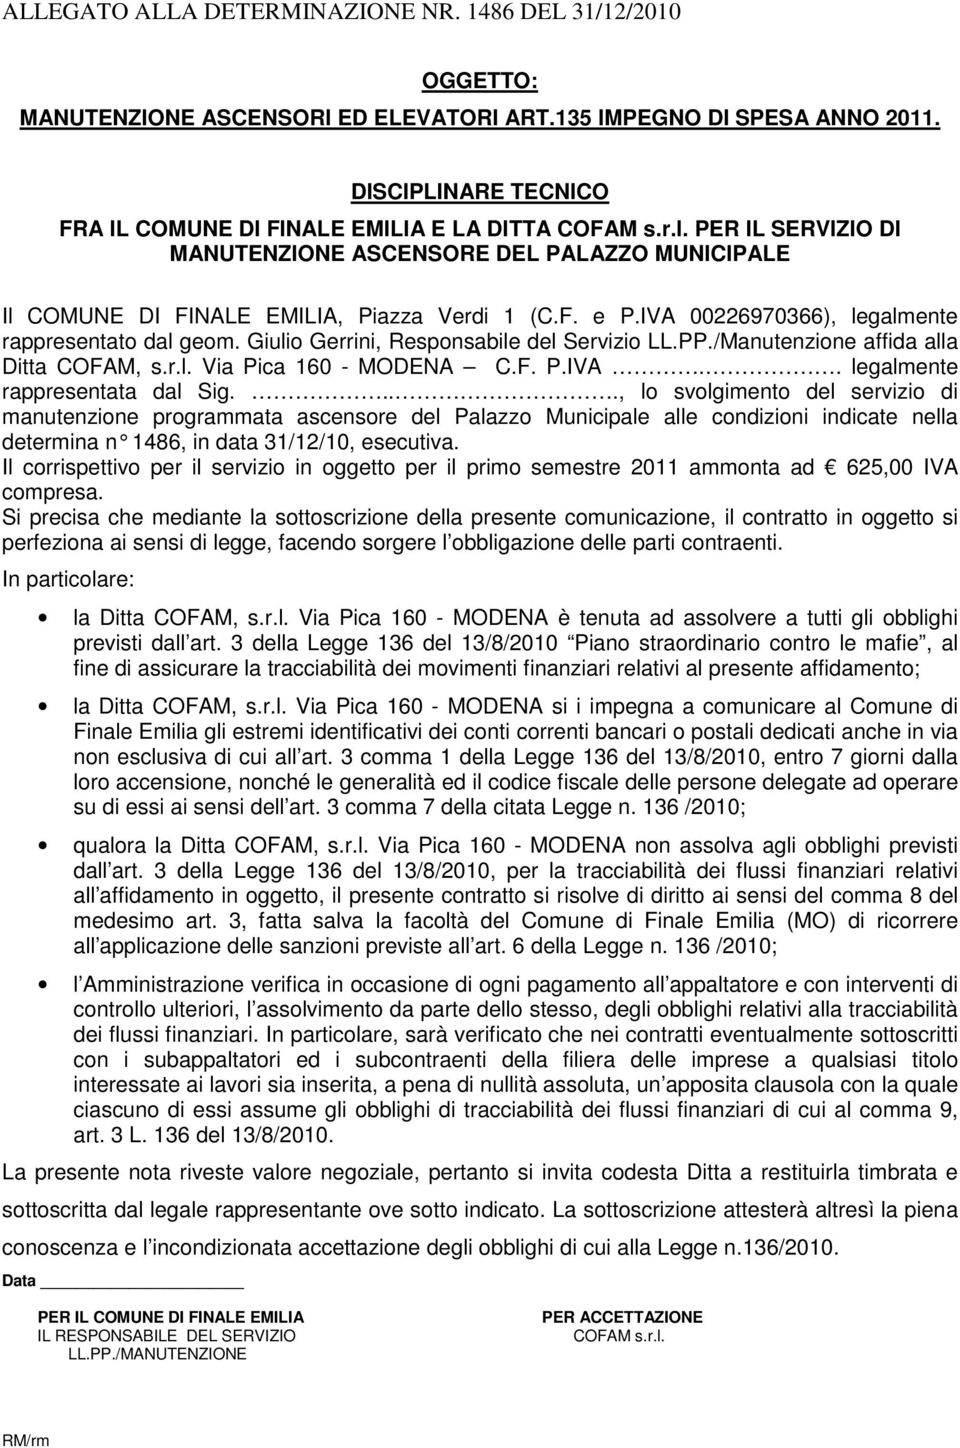 Giulio Gerrini, Responsabile del Servizio LL.PP./Manutenzione affida alla Ditta COFAM, s.r.l. Via Pica 160 - MODENA C.F. P.IVA.. legalmente rappresentata dal Sig.